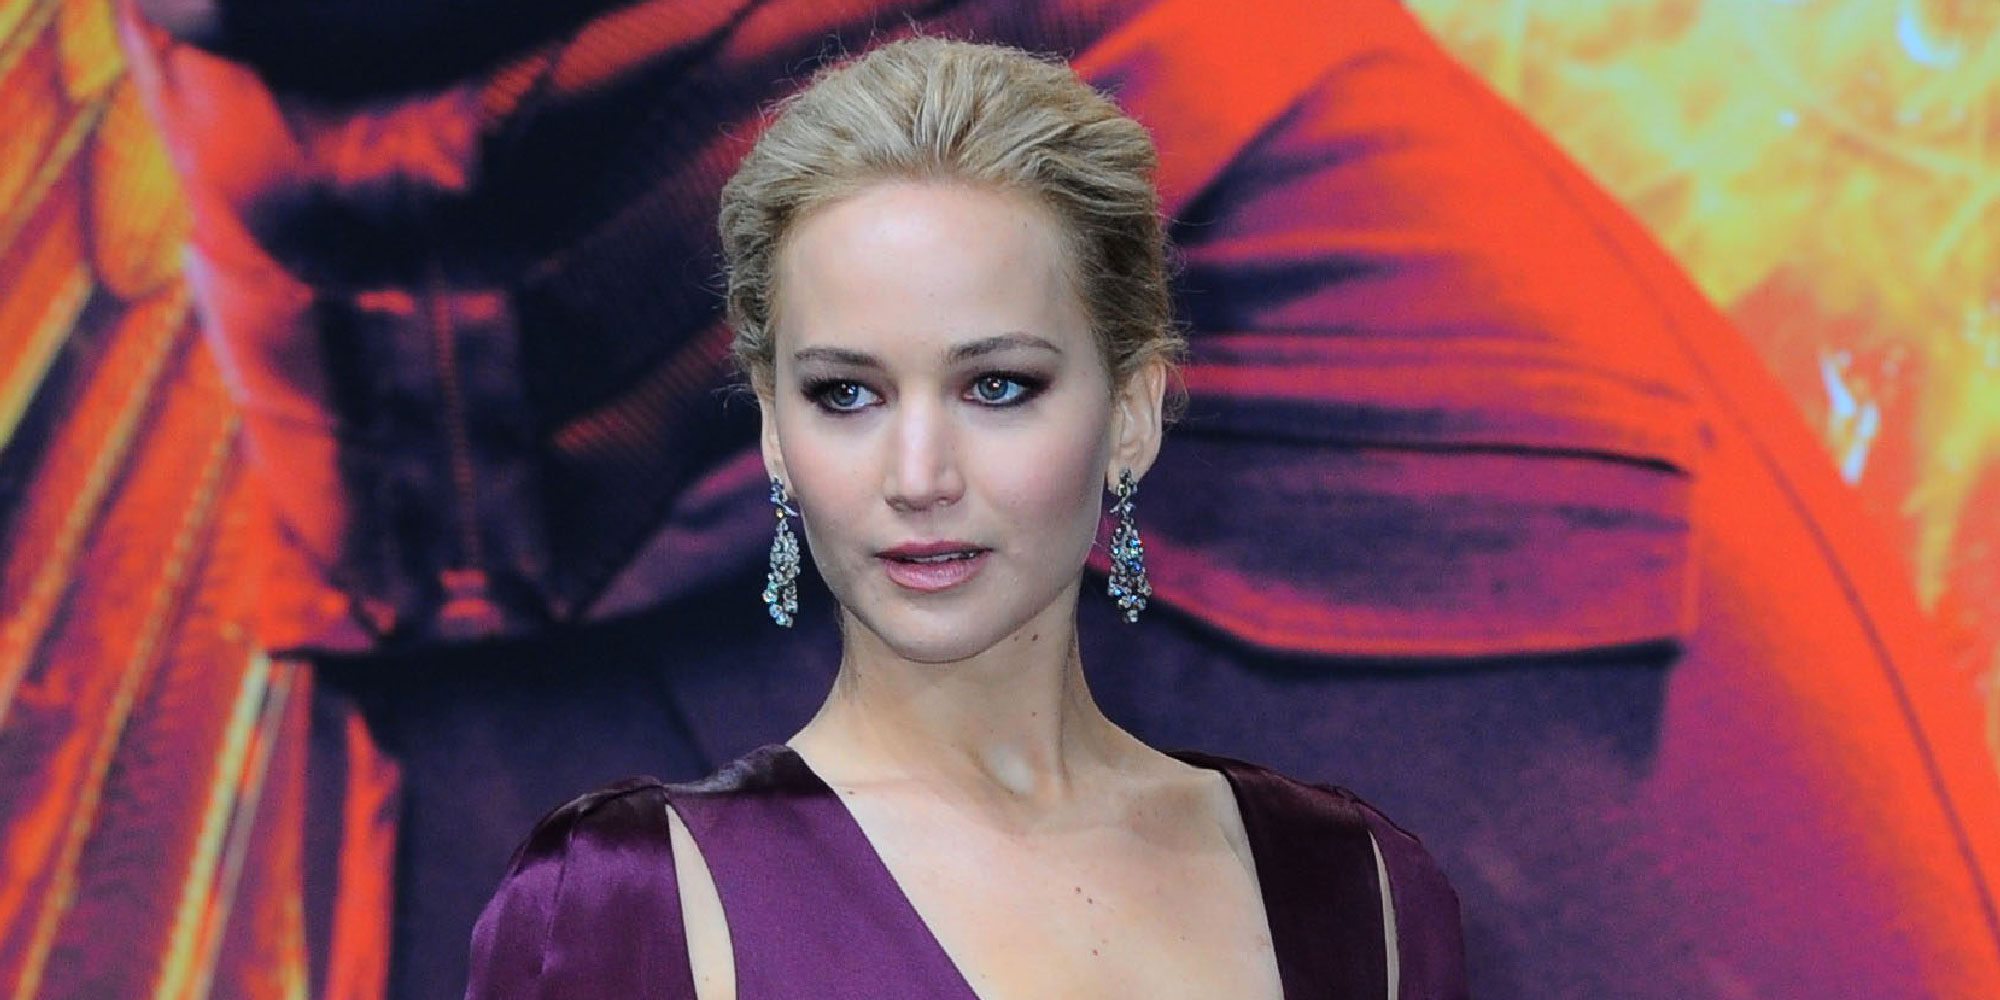 Salen a a luz nuevas fotos íntimas de Jennifer Lawrence tras ser hackeada en 2014